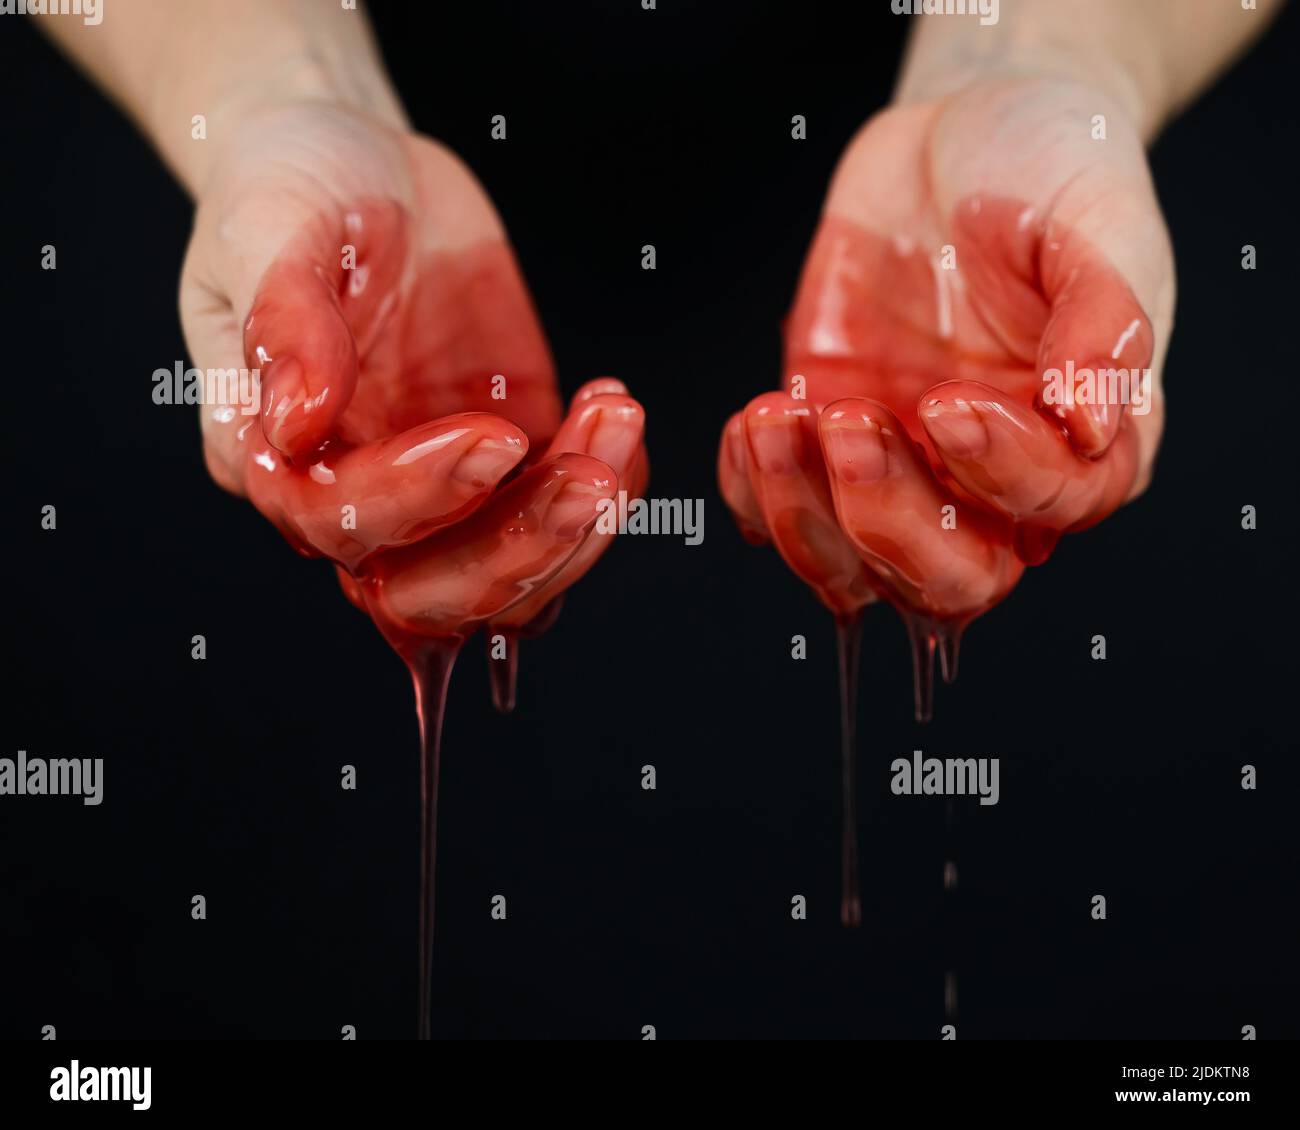 Frauenhände in einer zähflüssigen roten Flüssigkeit ähnlich dem Blut. Stockfoto